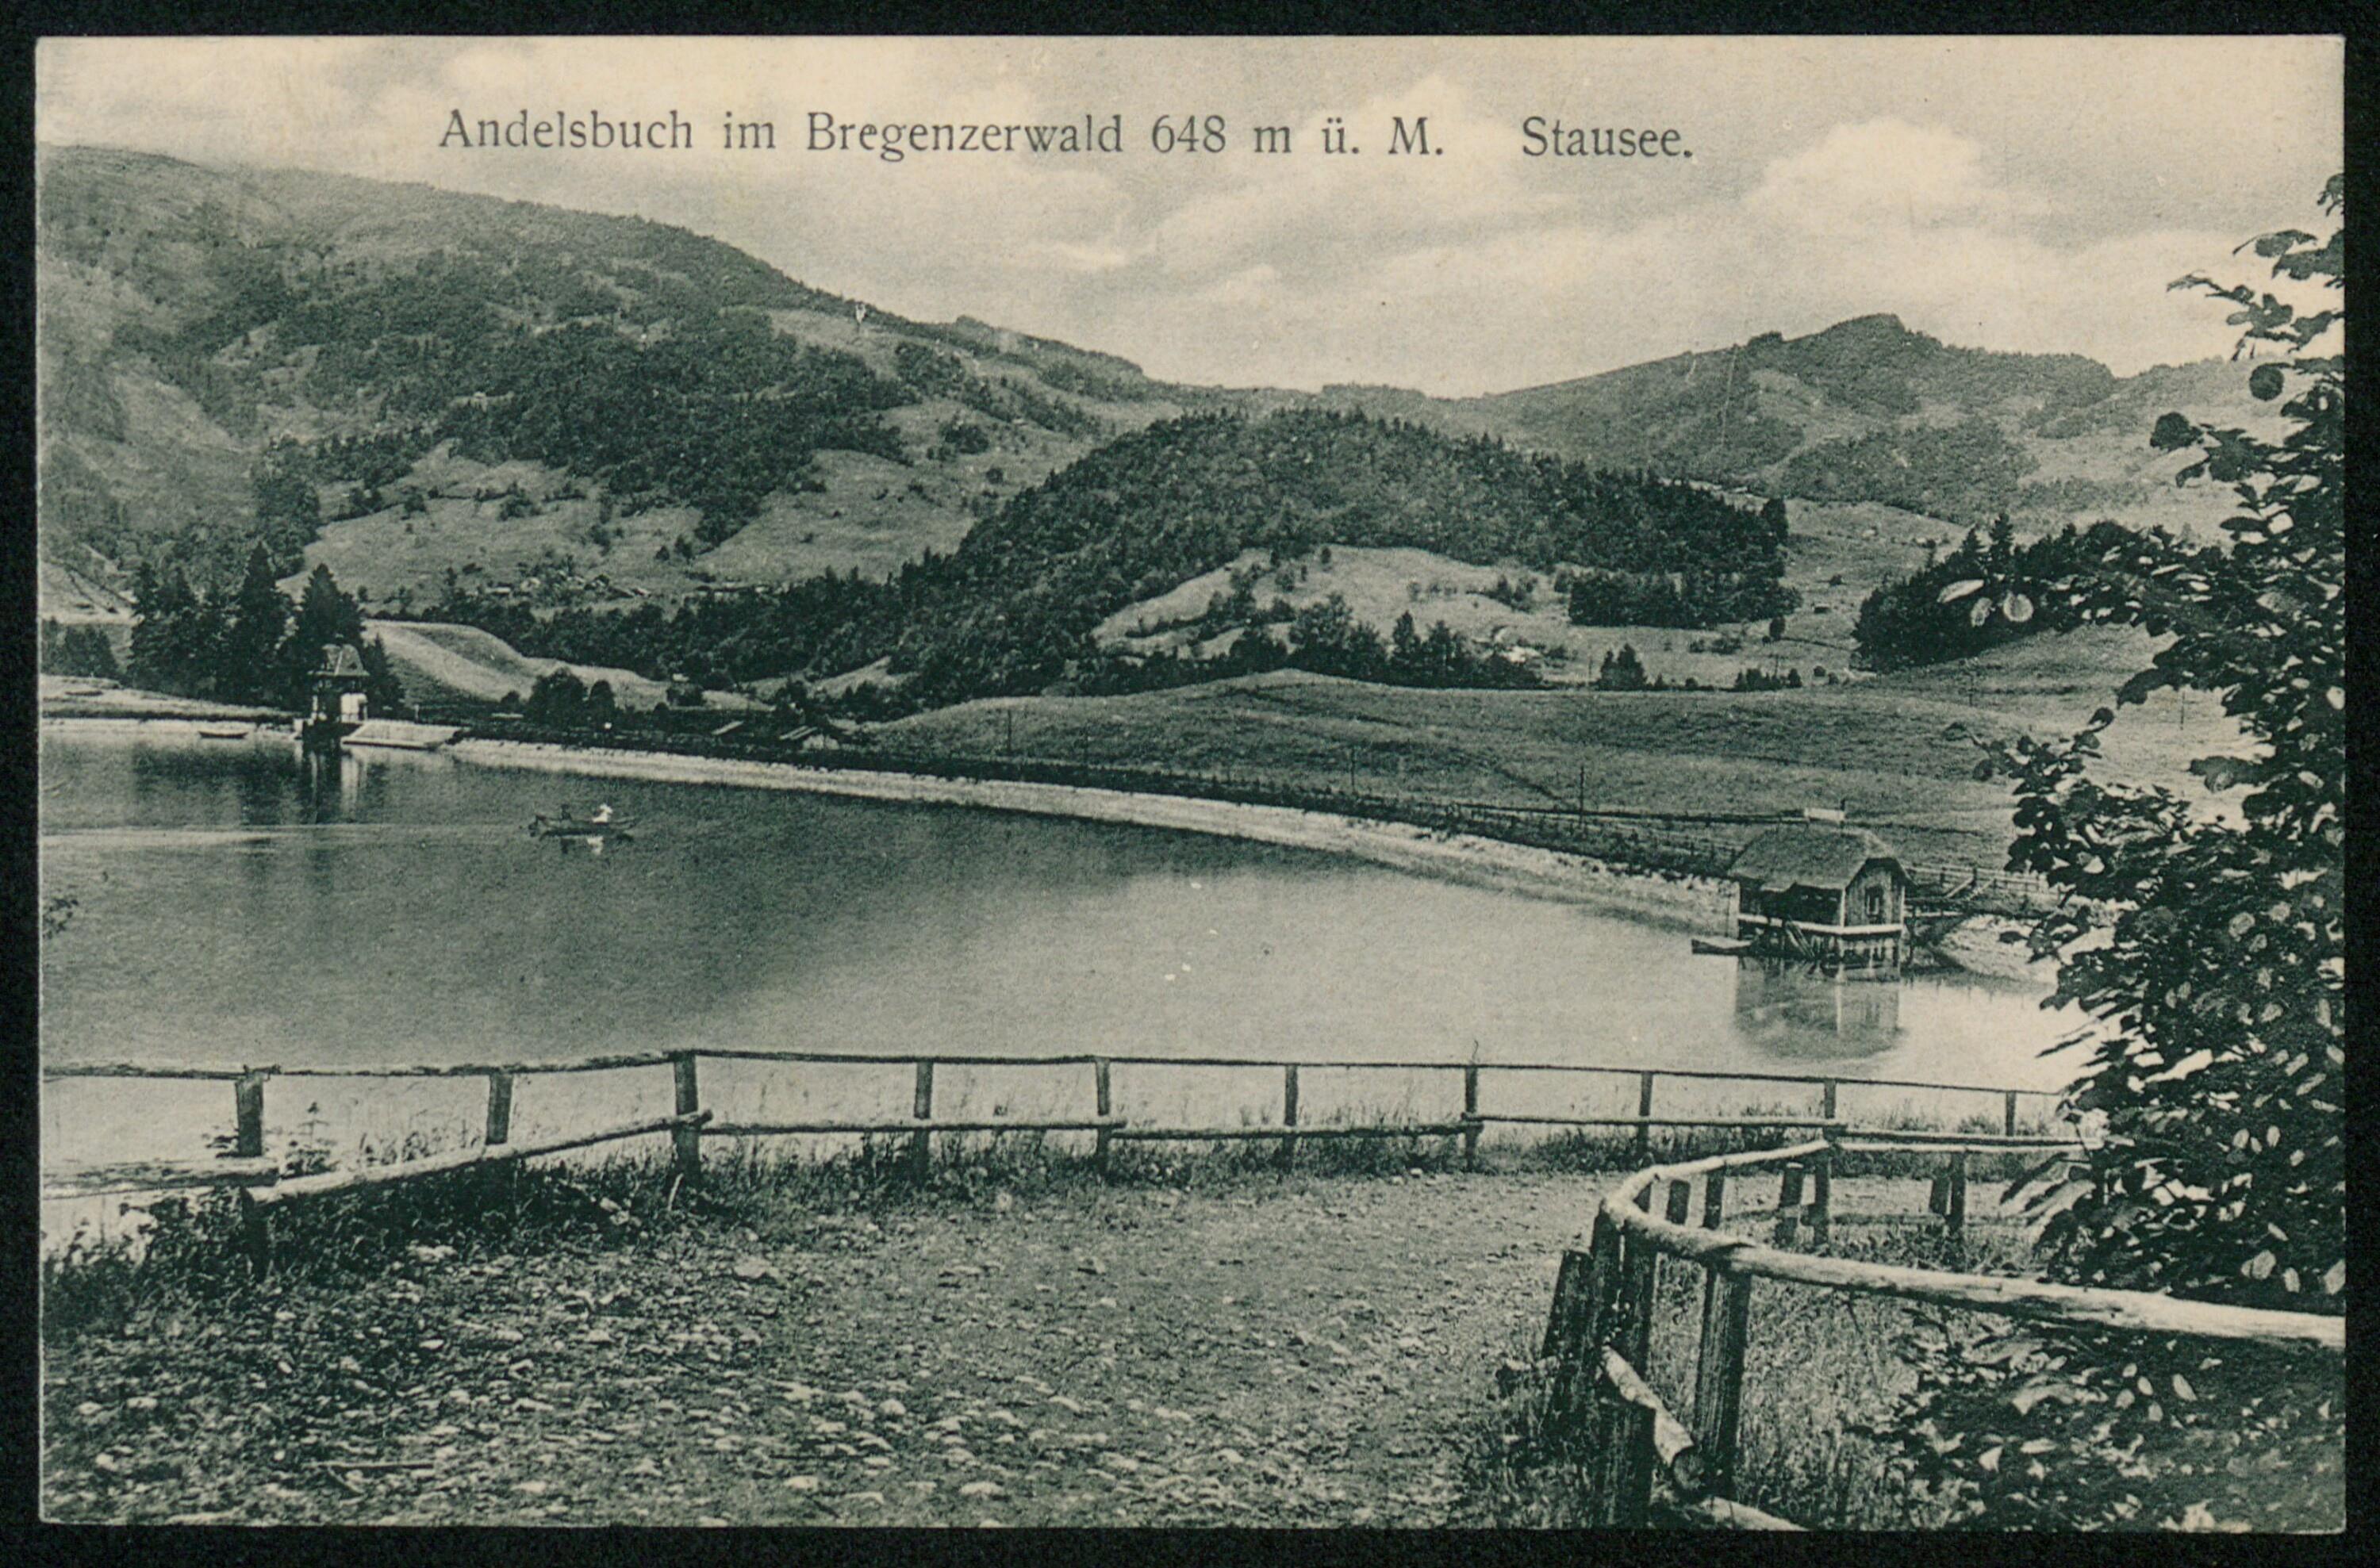 Andelsbuch im Bregenzerwald 648 m ü. M. Stausee></div>


    <hr>
    <div class=